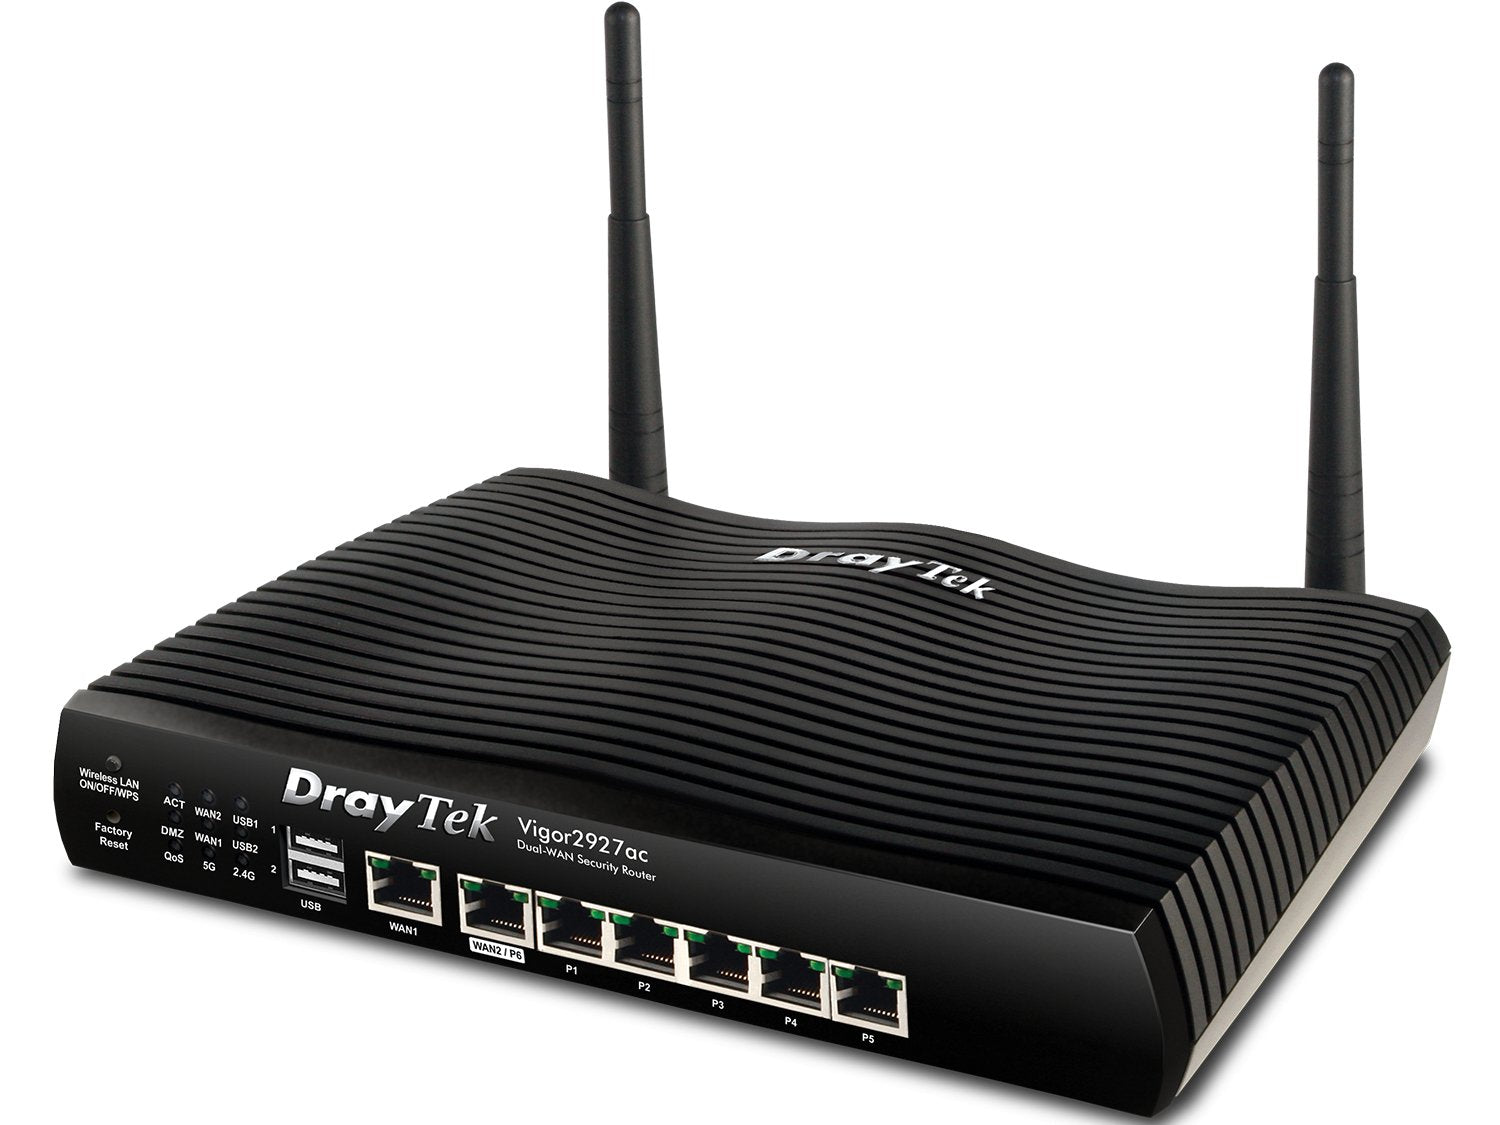 Draytek Vigor 2927ac Dual-WAN Wi-Fi Router - Open Box Vigor2927ac-OB - The Telecom Spot